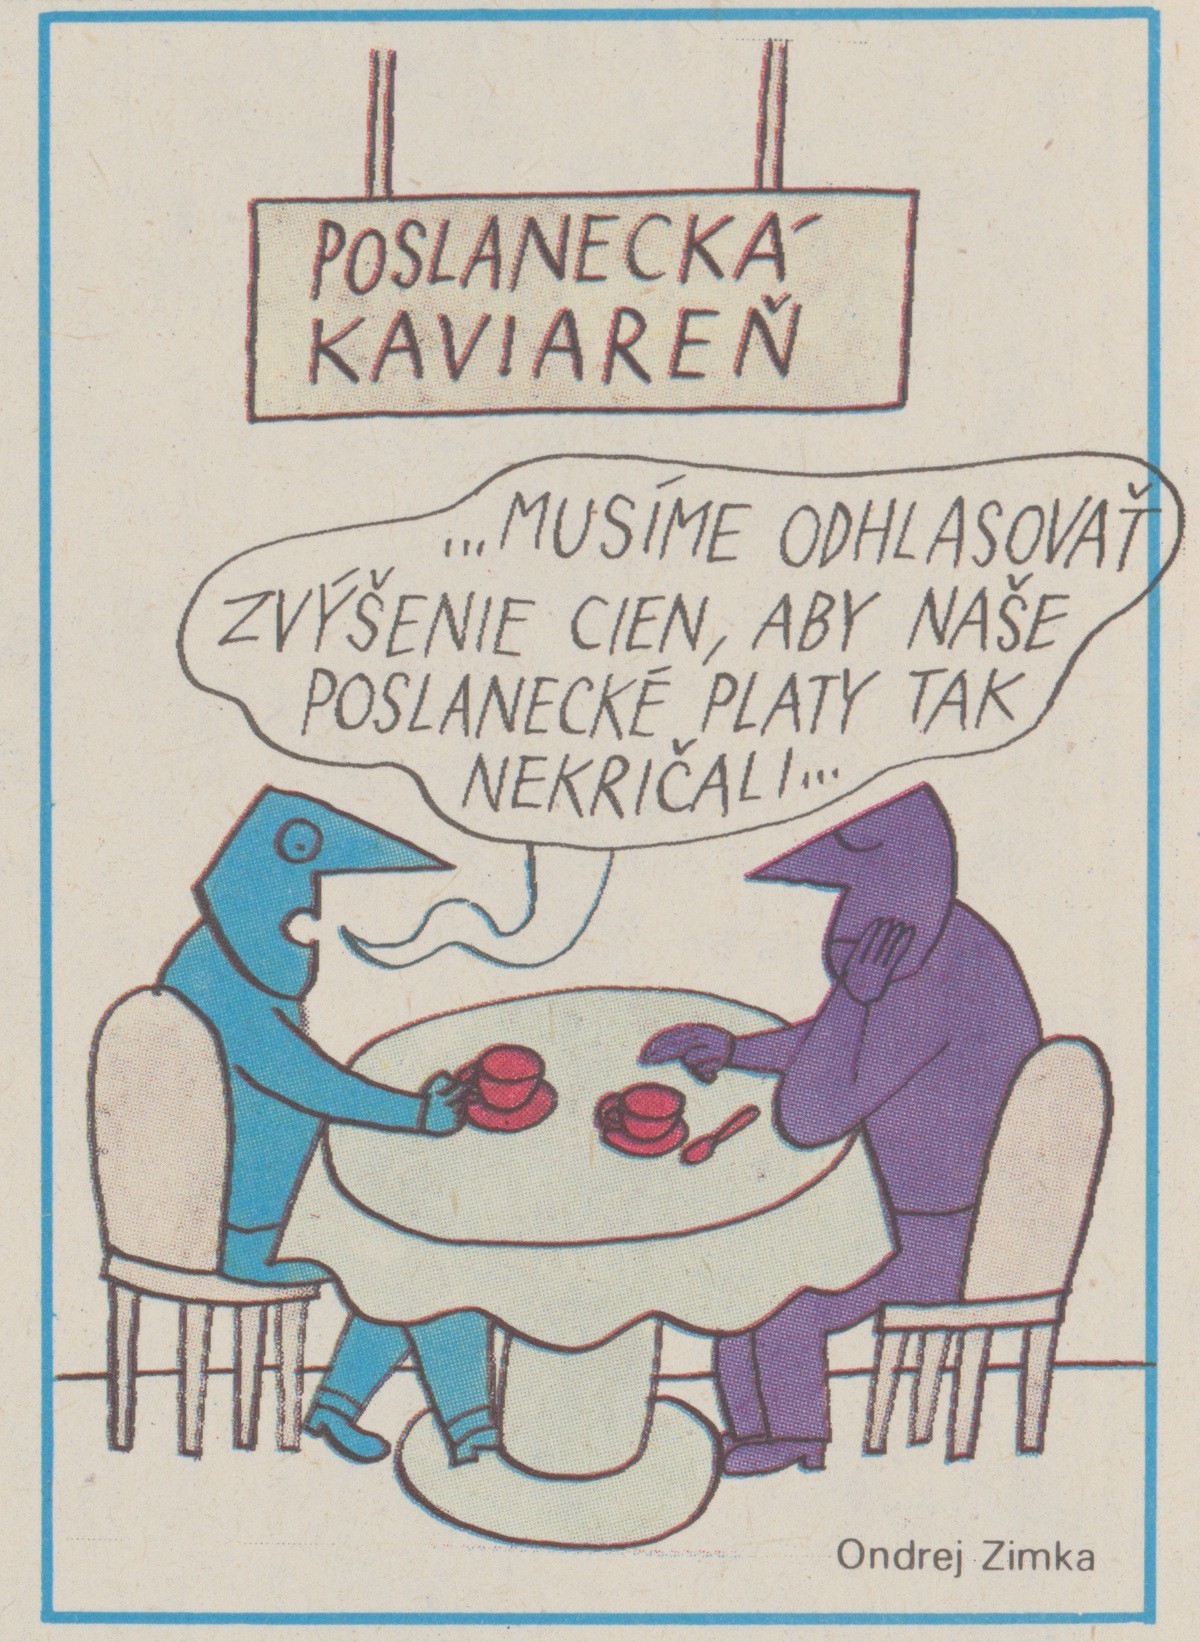 Ondrej Zimka, Poslanecká kaviareň. 1990. Časopis Roháč